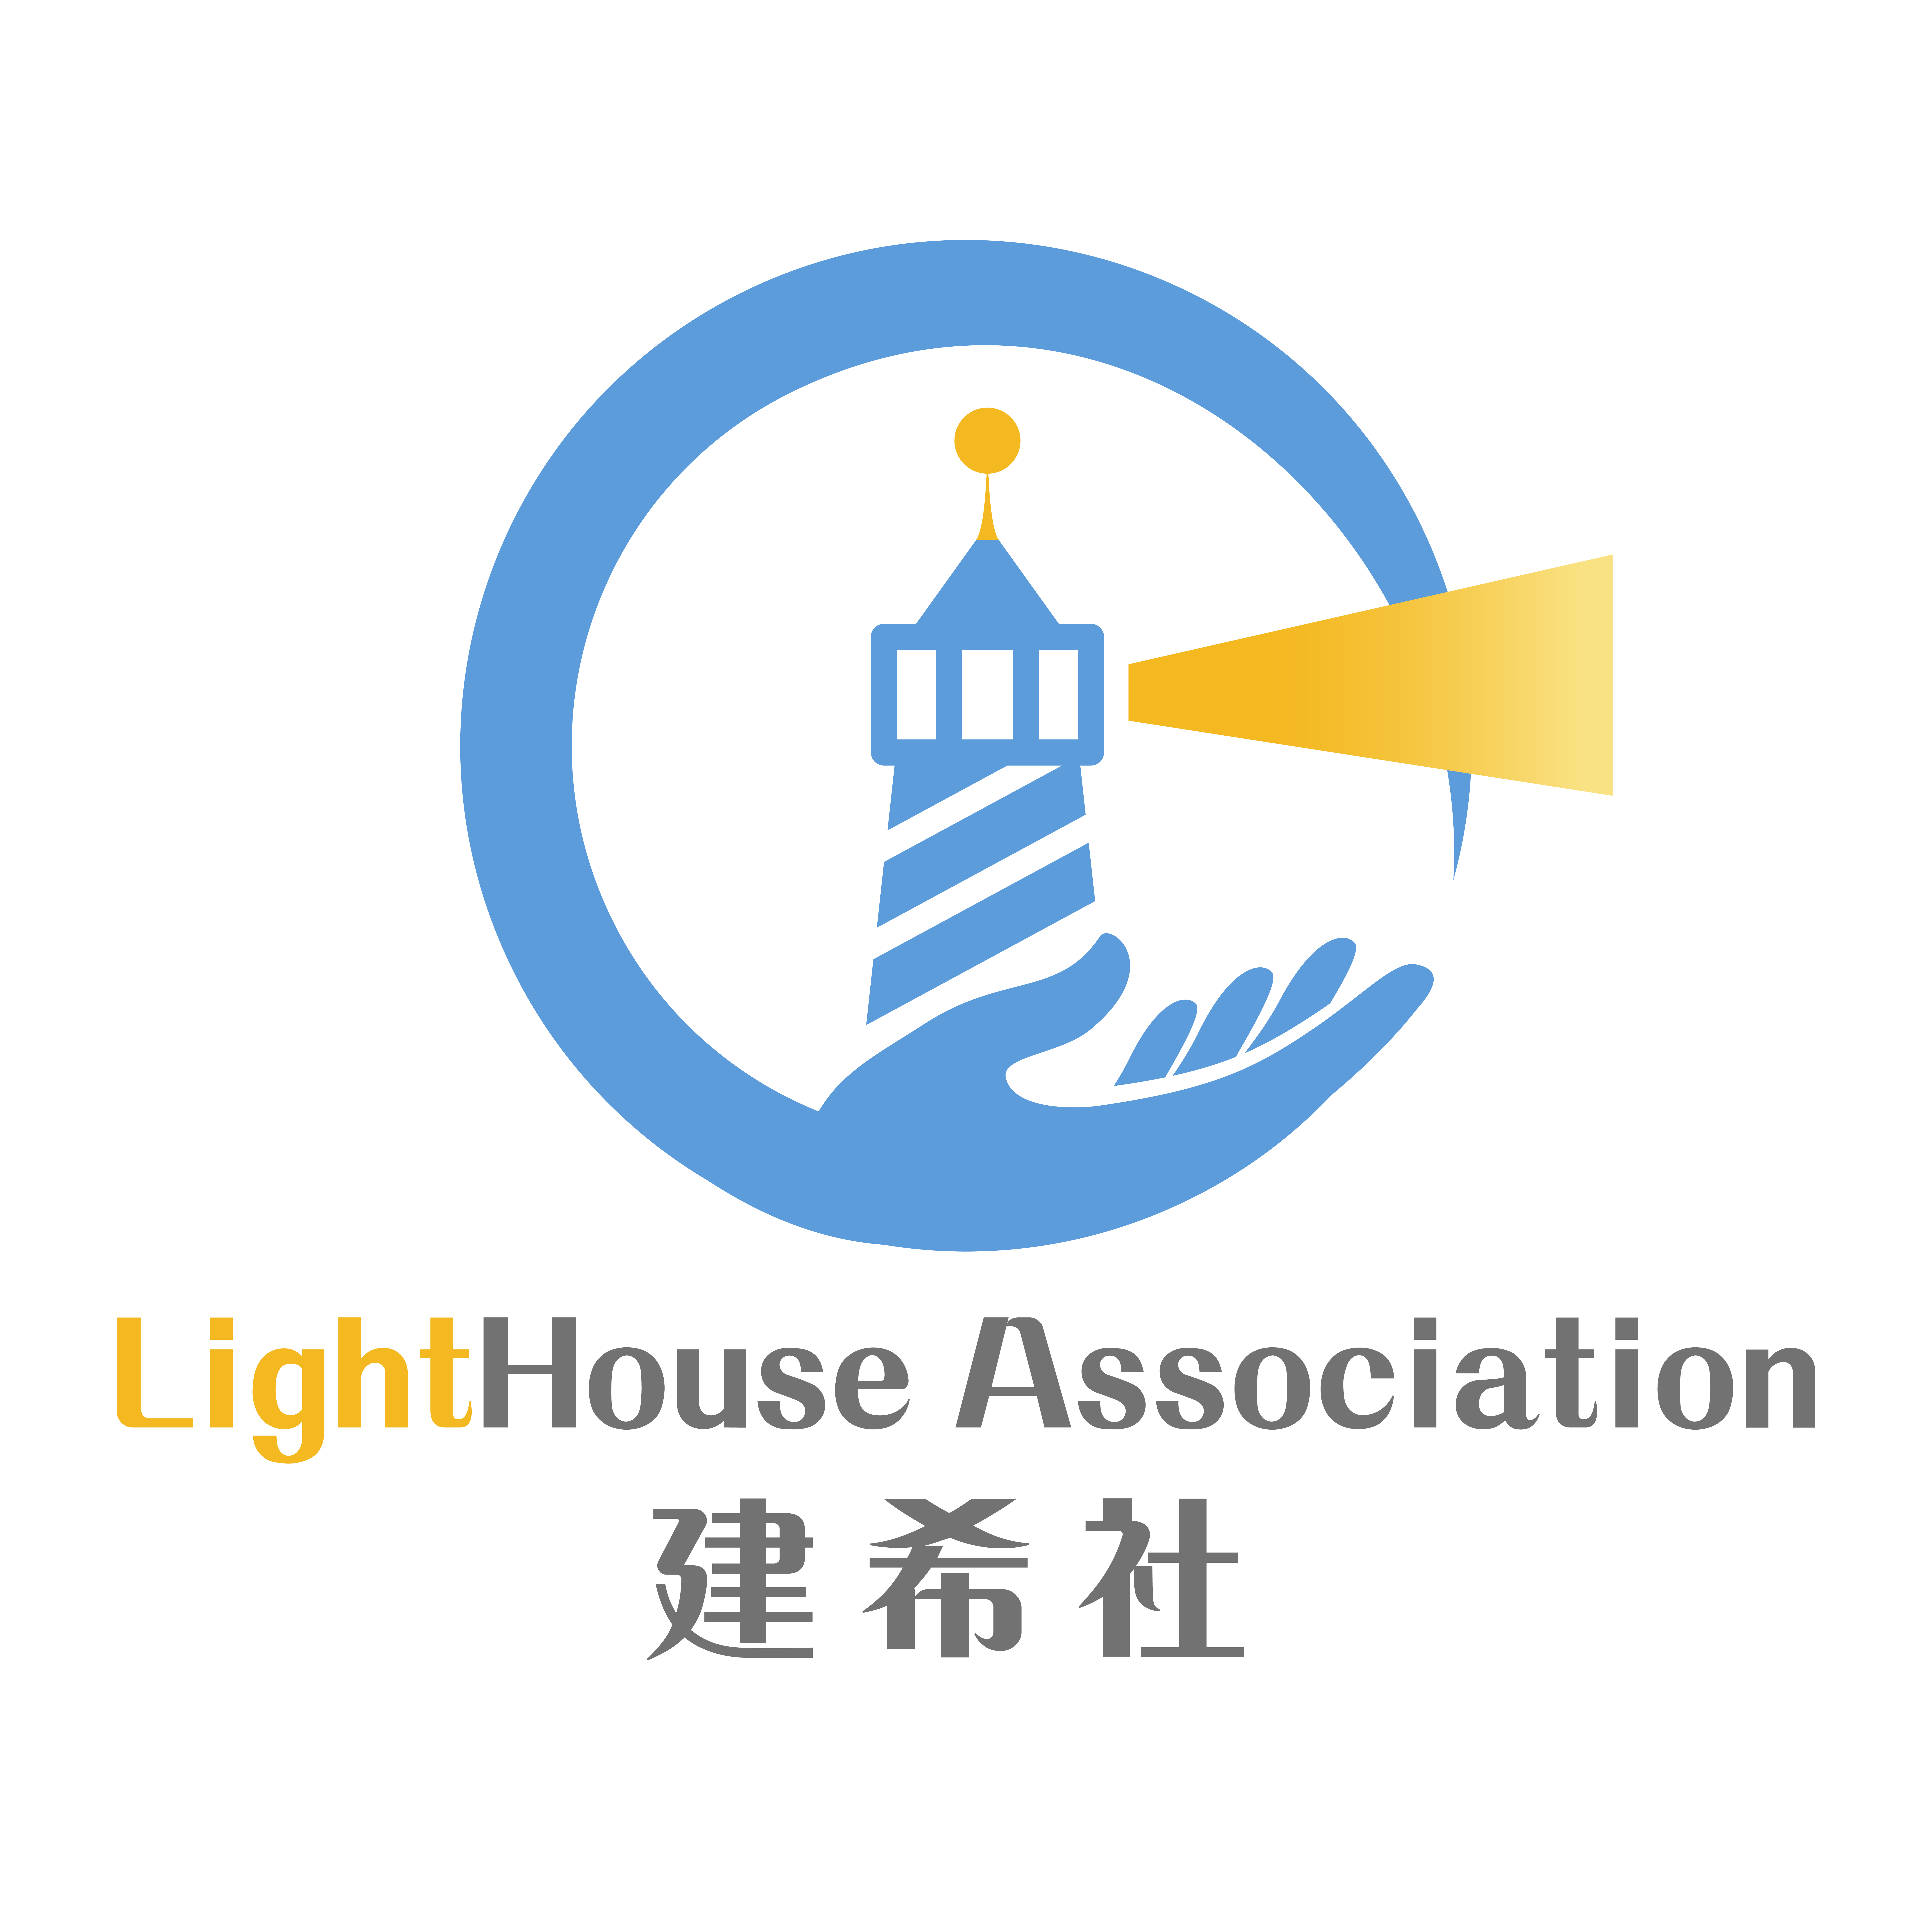 Lighthouse Association Hong Kong